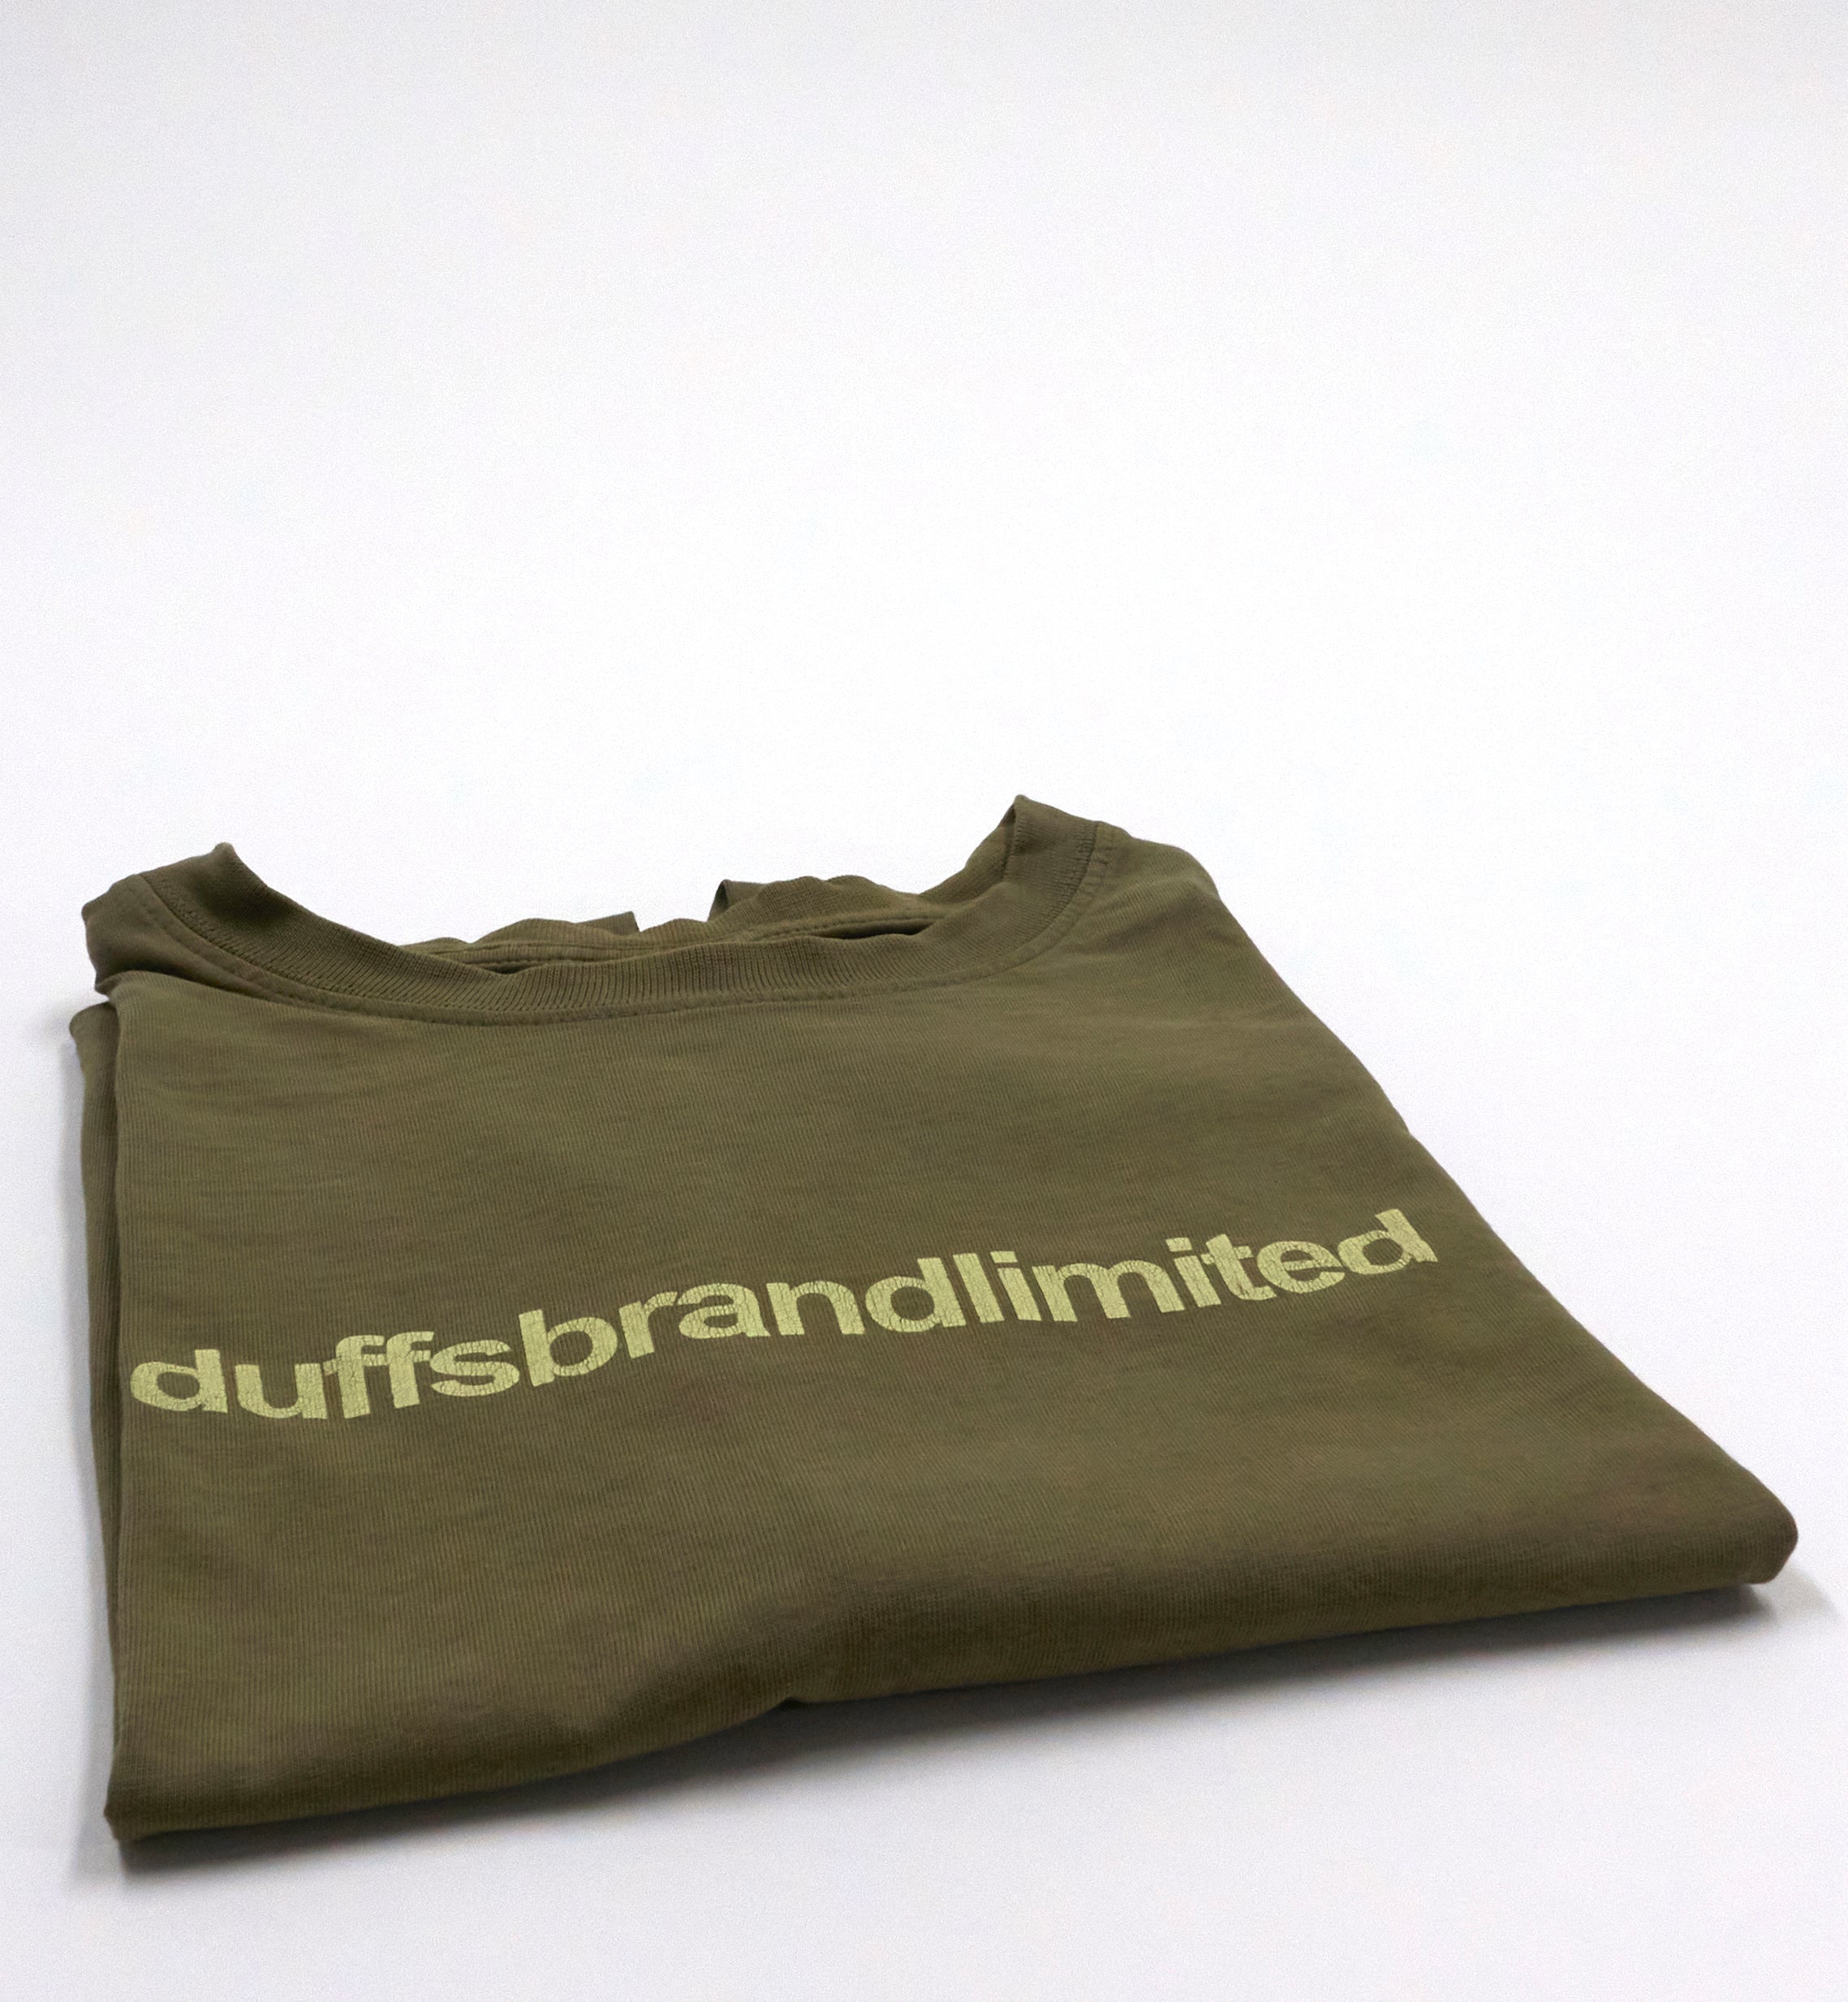 Duffs - Duffs Brand Limited 90's Shirt Size Medium